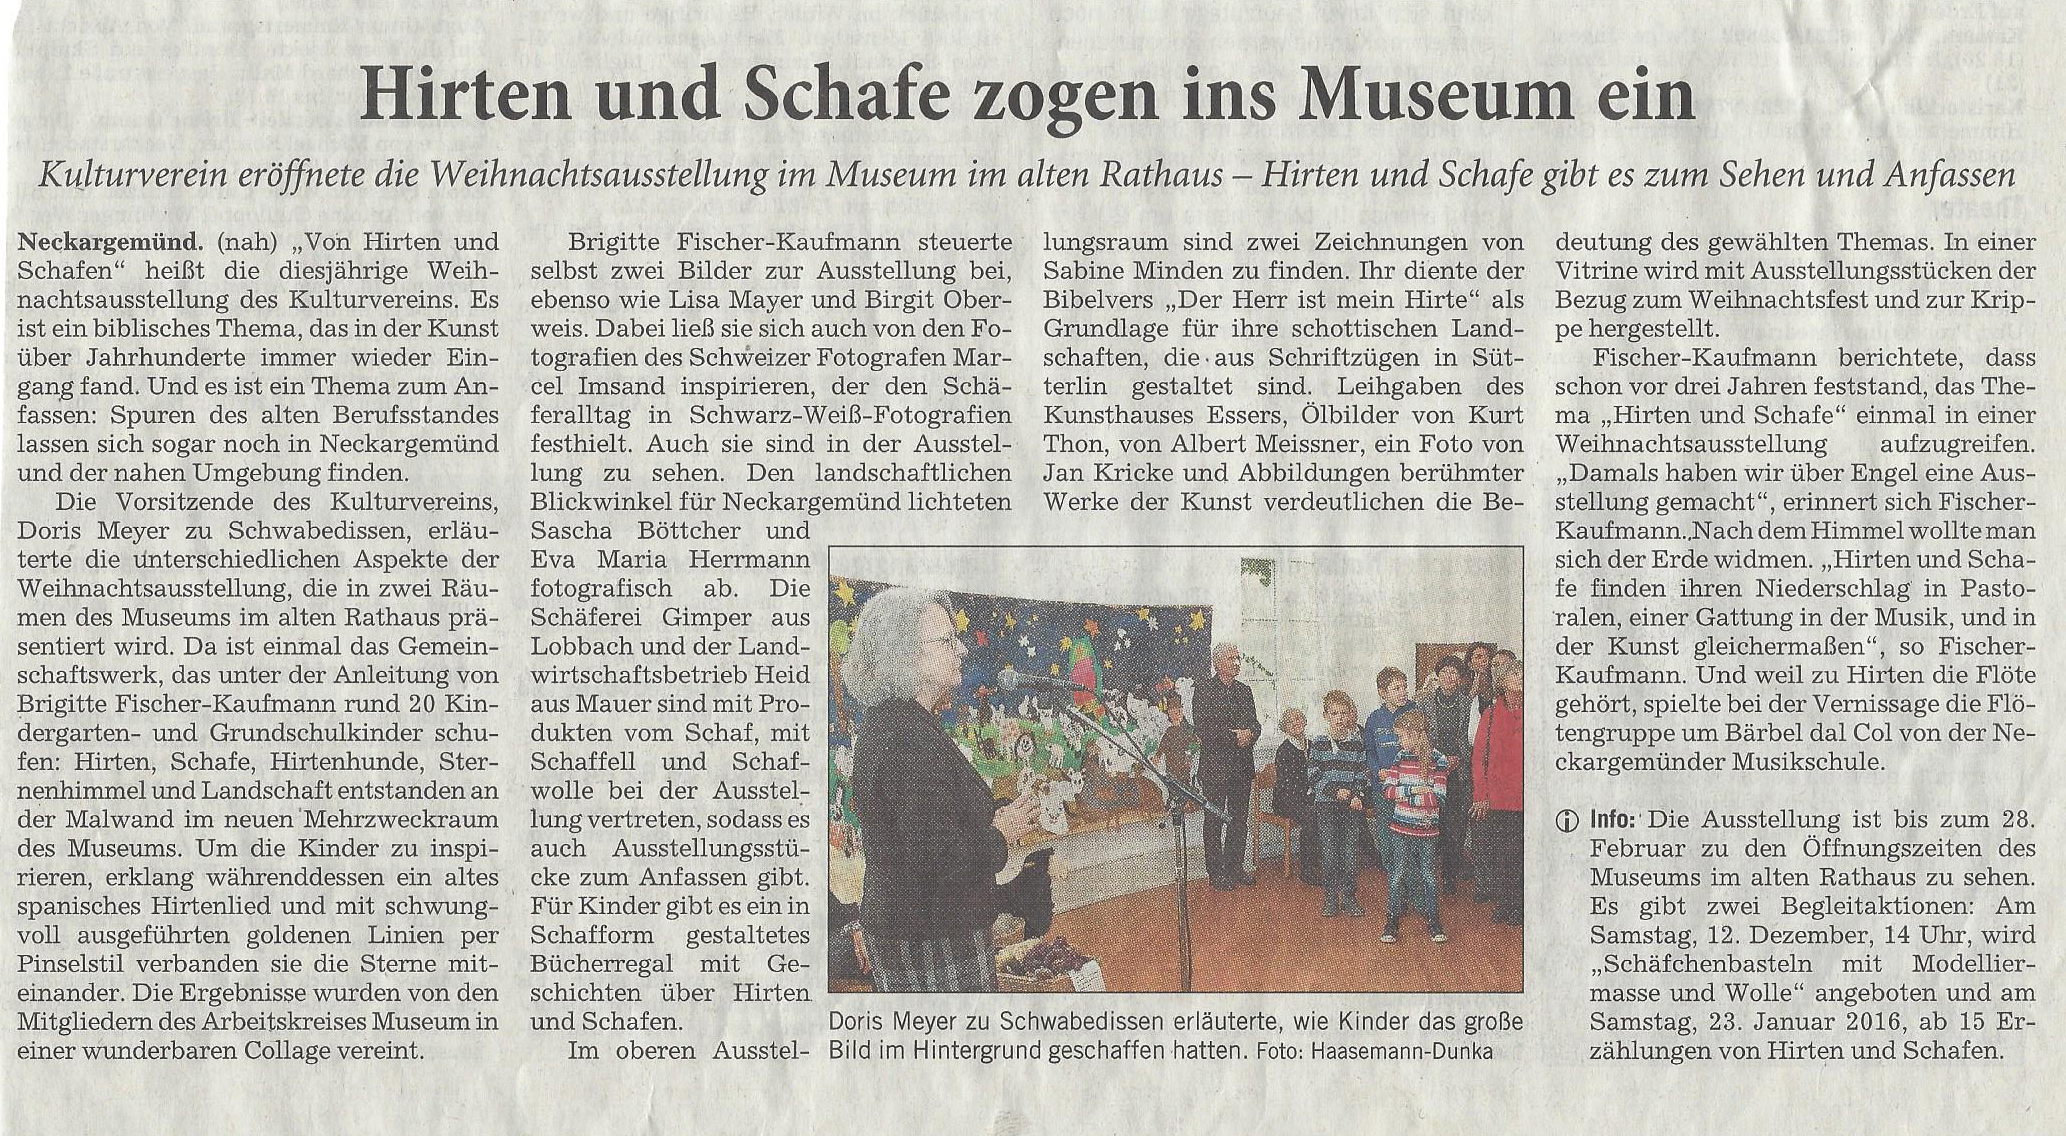 Rhein-Neckar-Zeitung 2015